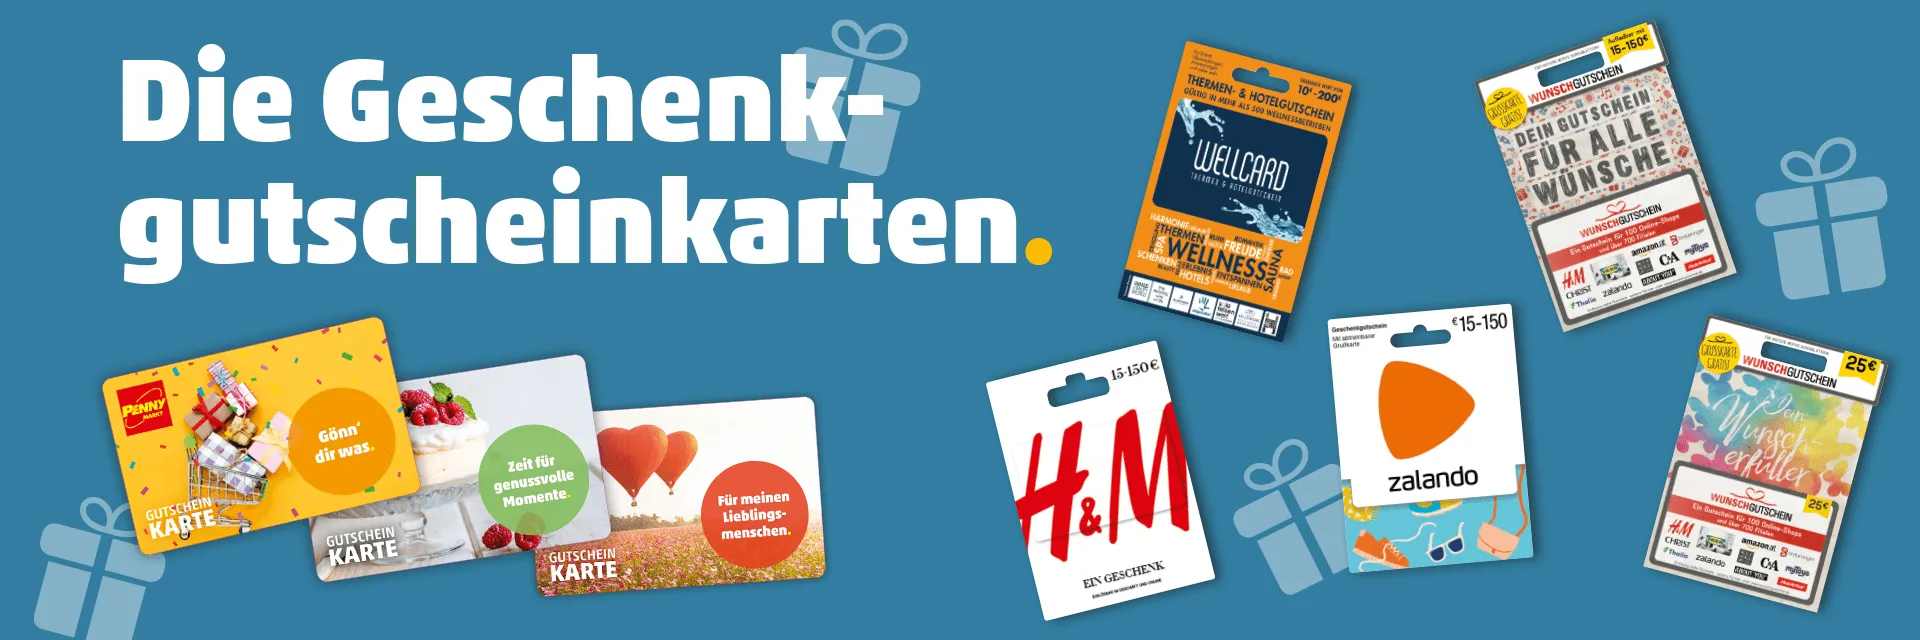 Gutscheine & Markt Wertkarten Österreich | Verschenken zum PENNY